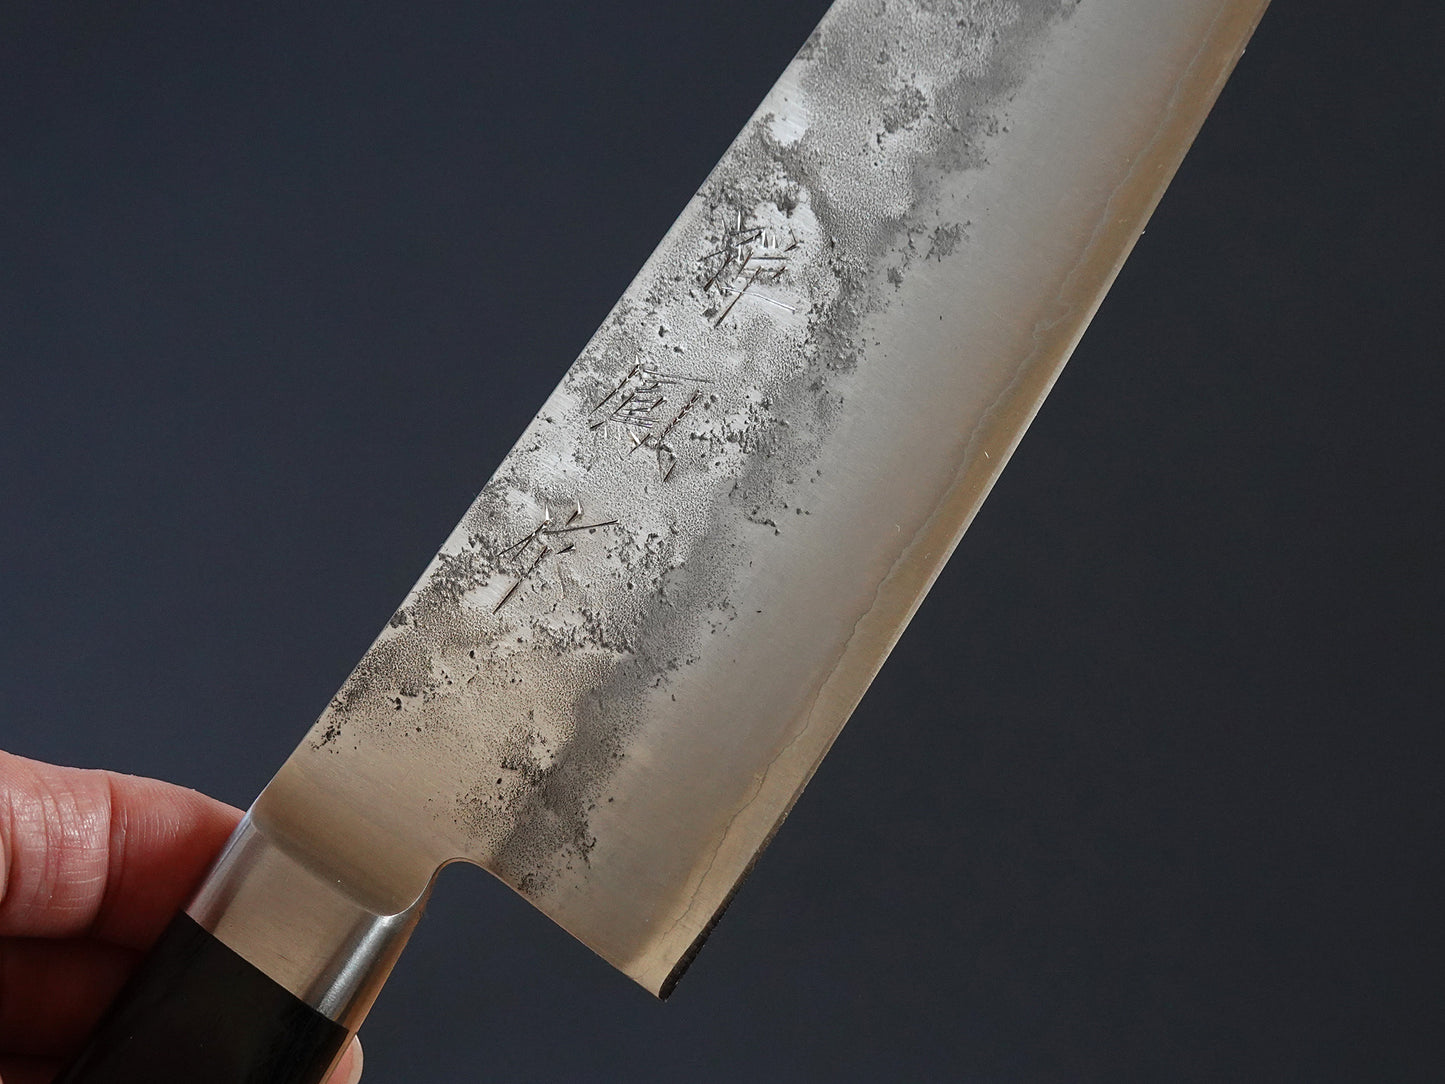 Gyuto ➤ Cuchillos de Cocina Japoneses Profesionales de Chef